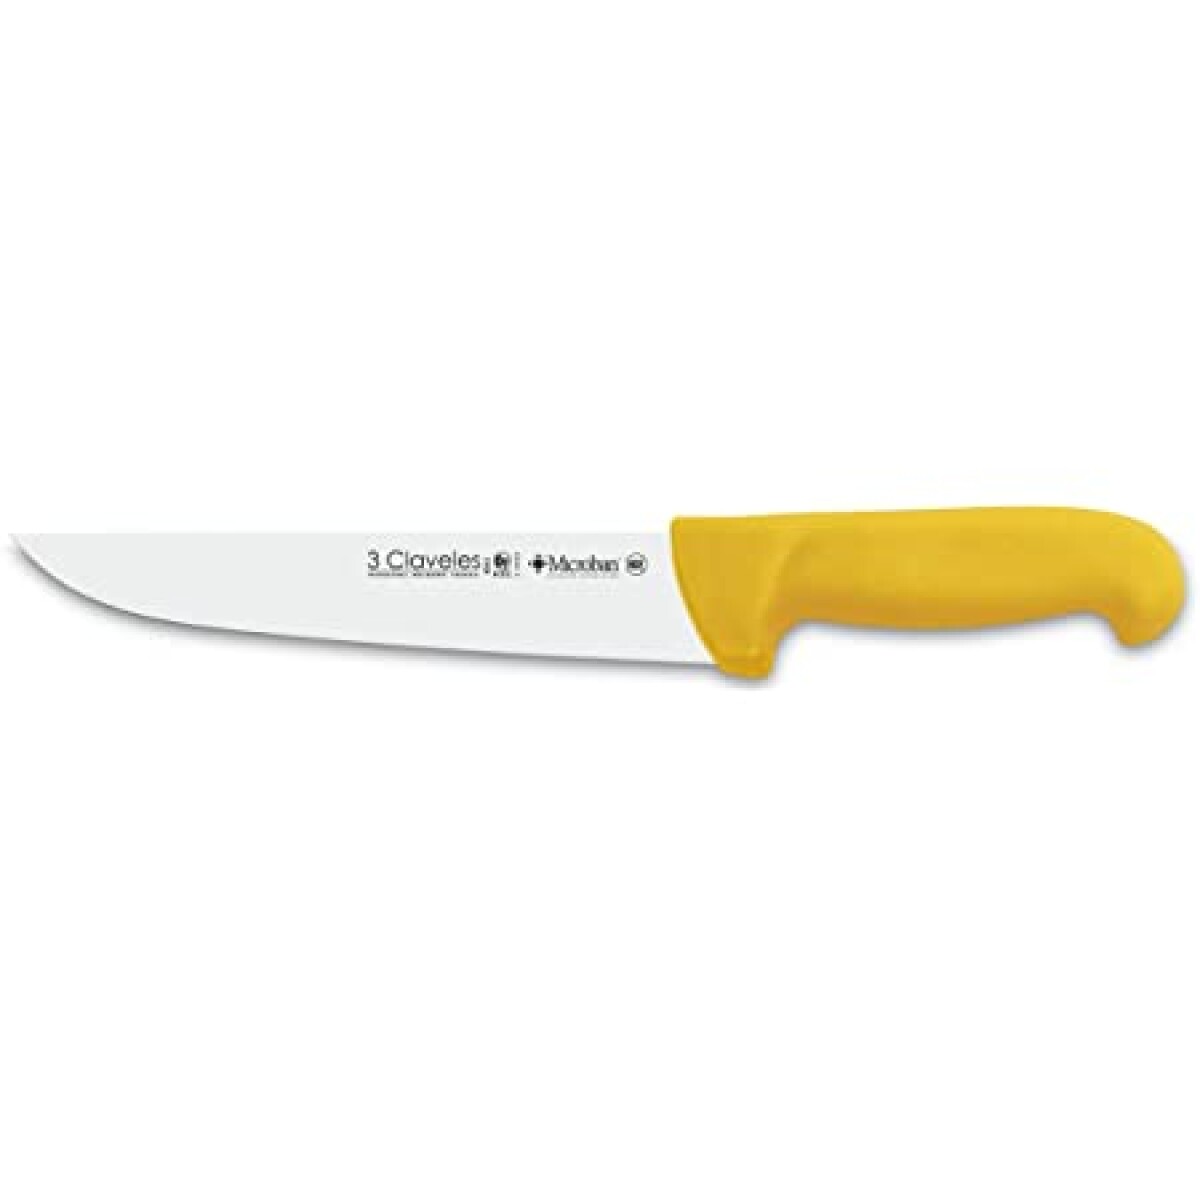 Cuchillo 3 Claveles carnicero 30cm REF1388 m/amarillo 